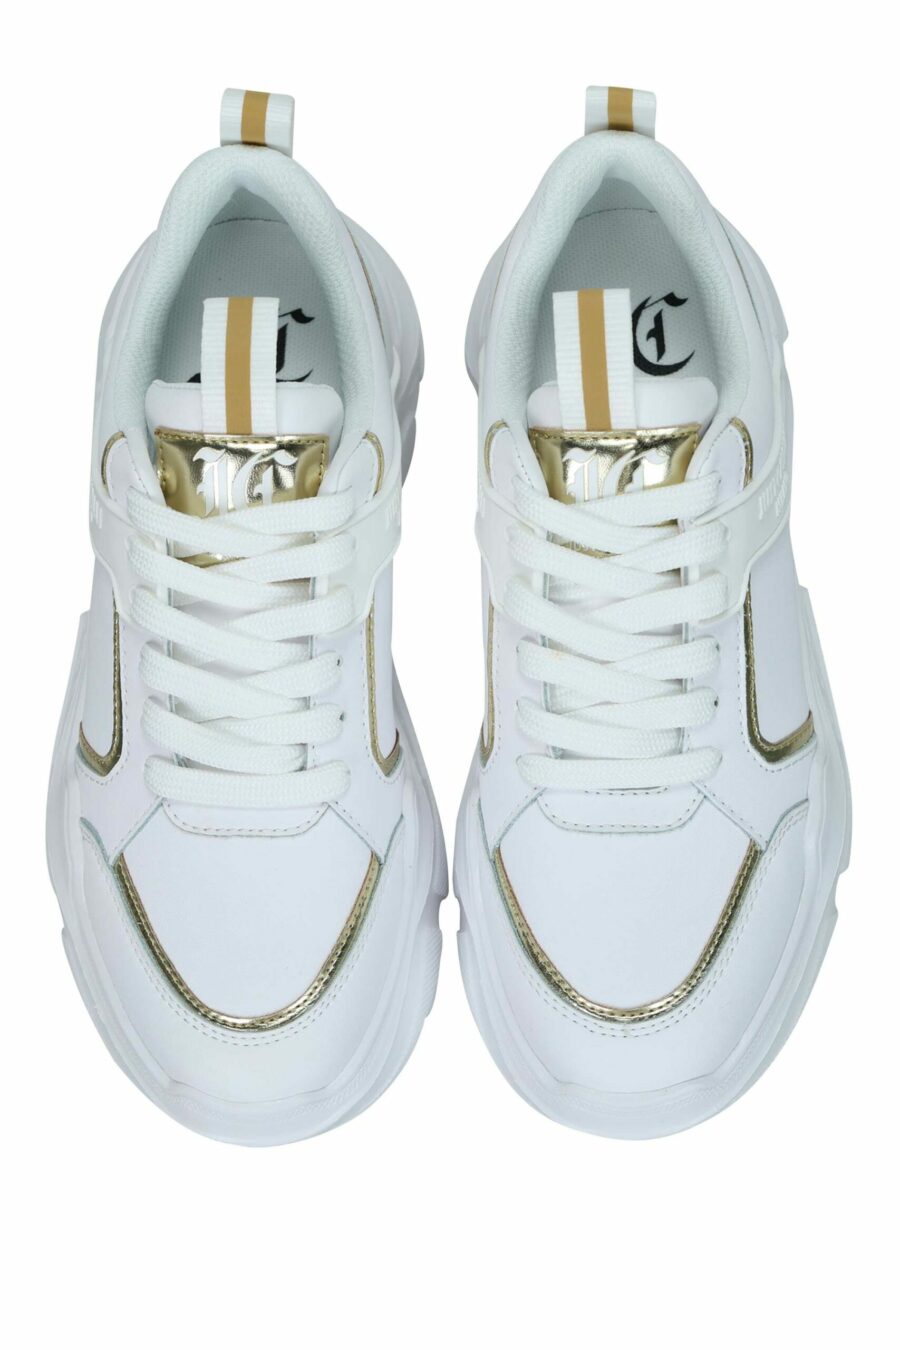 Zapatillas blancas con lineas doradas y logo monocromático - 8052672731968 4 scaled